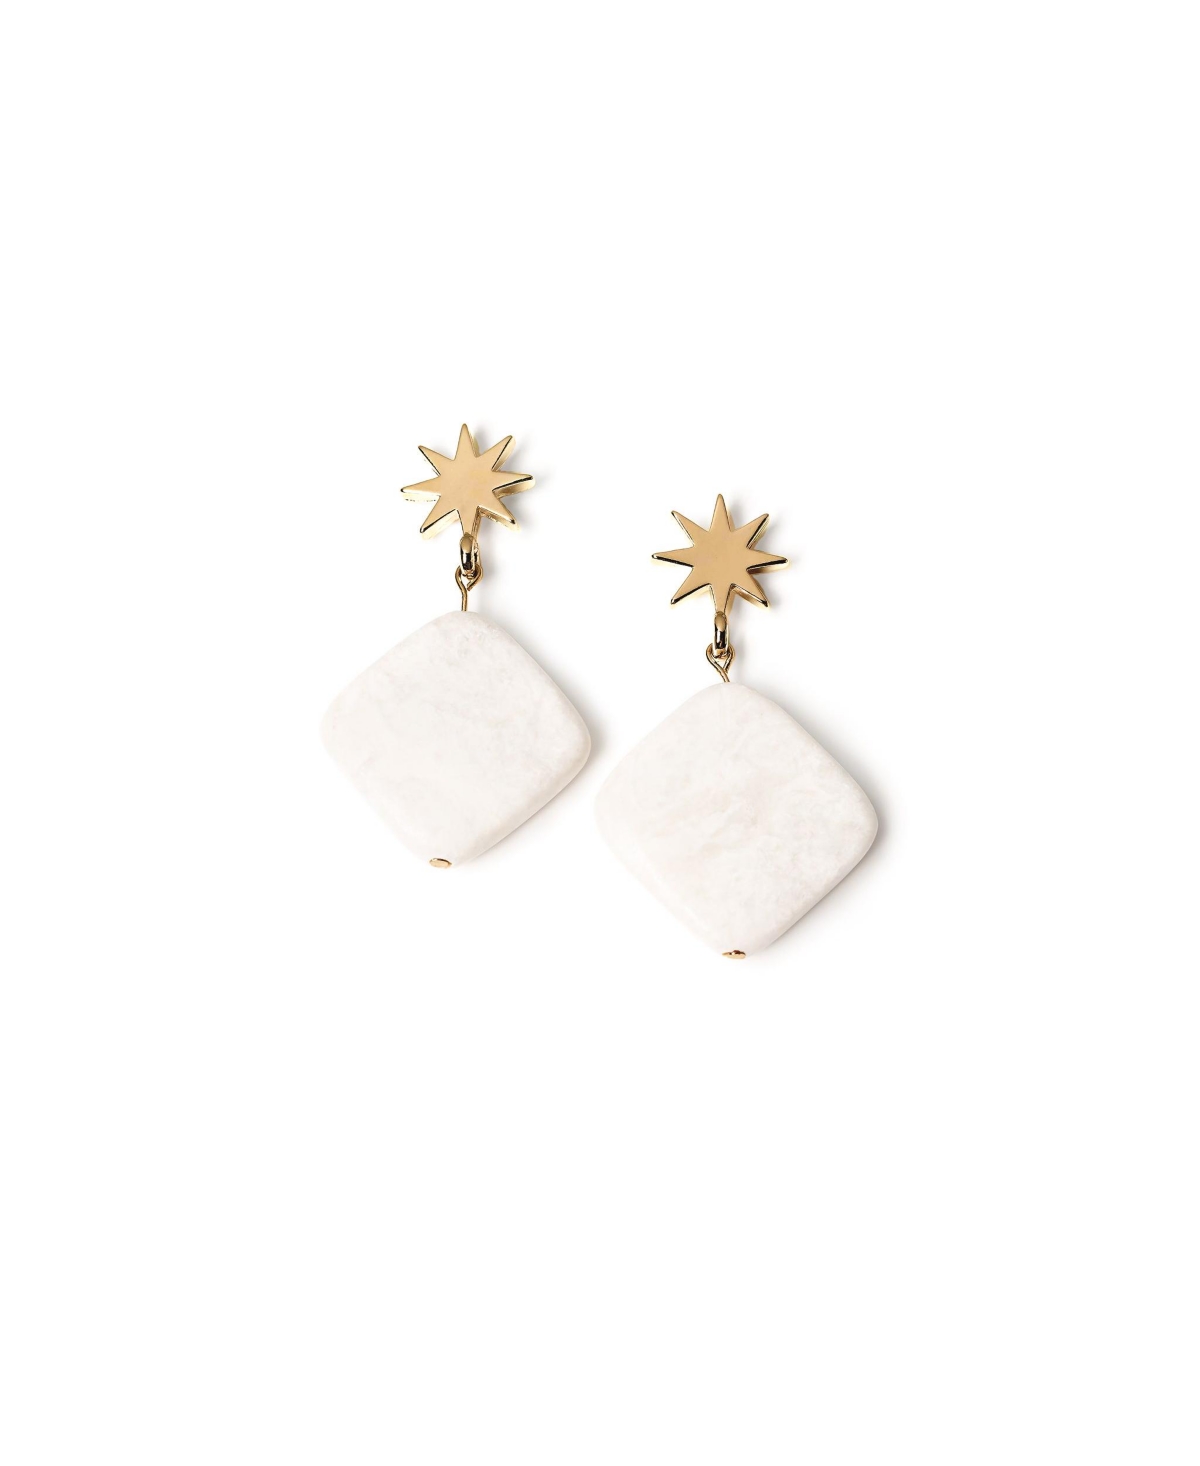 Star + White Jade Earrings - White